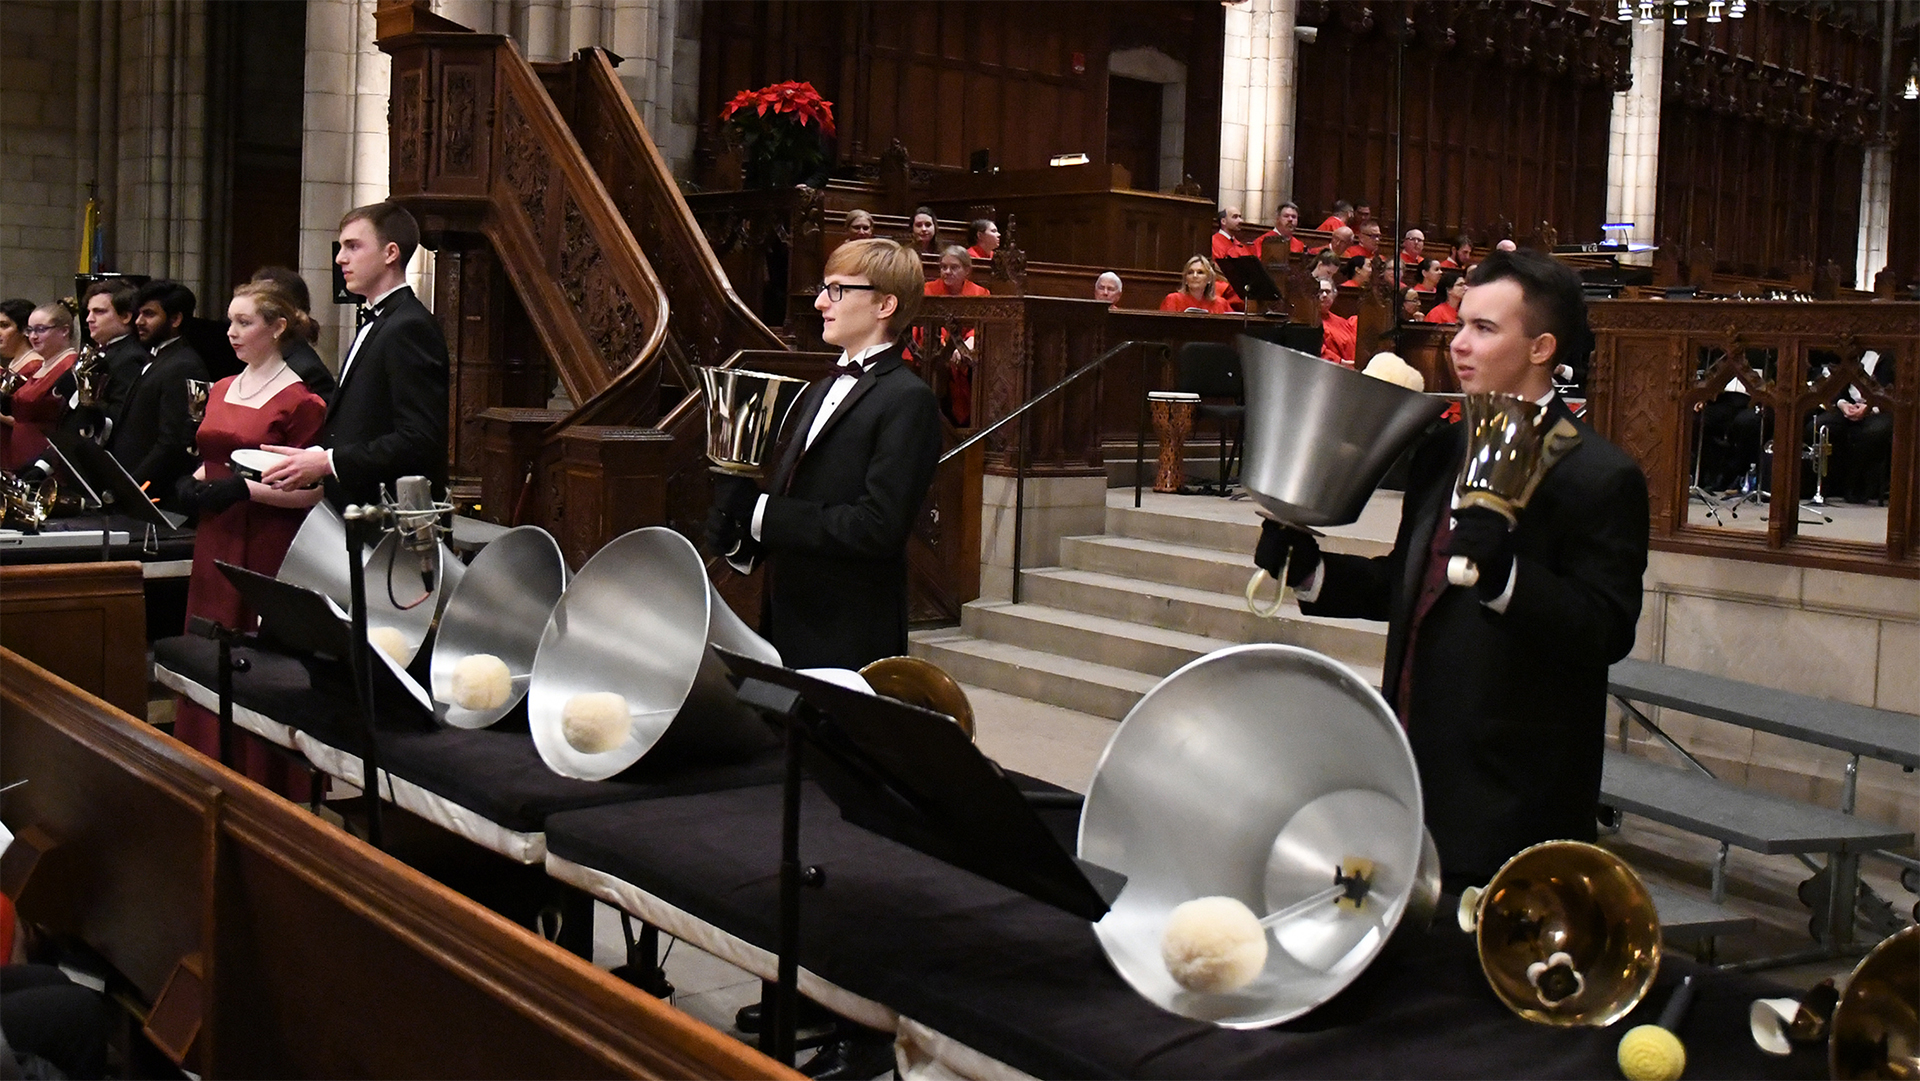 Westminster Concert Bell Choir performs